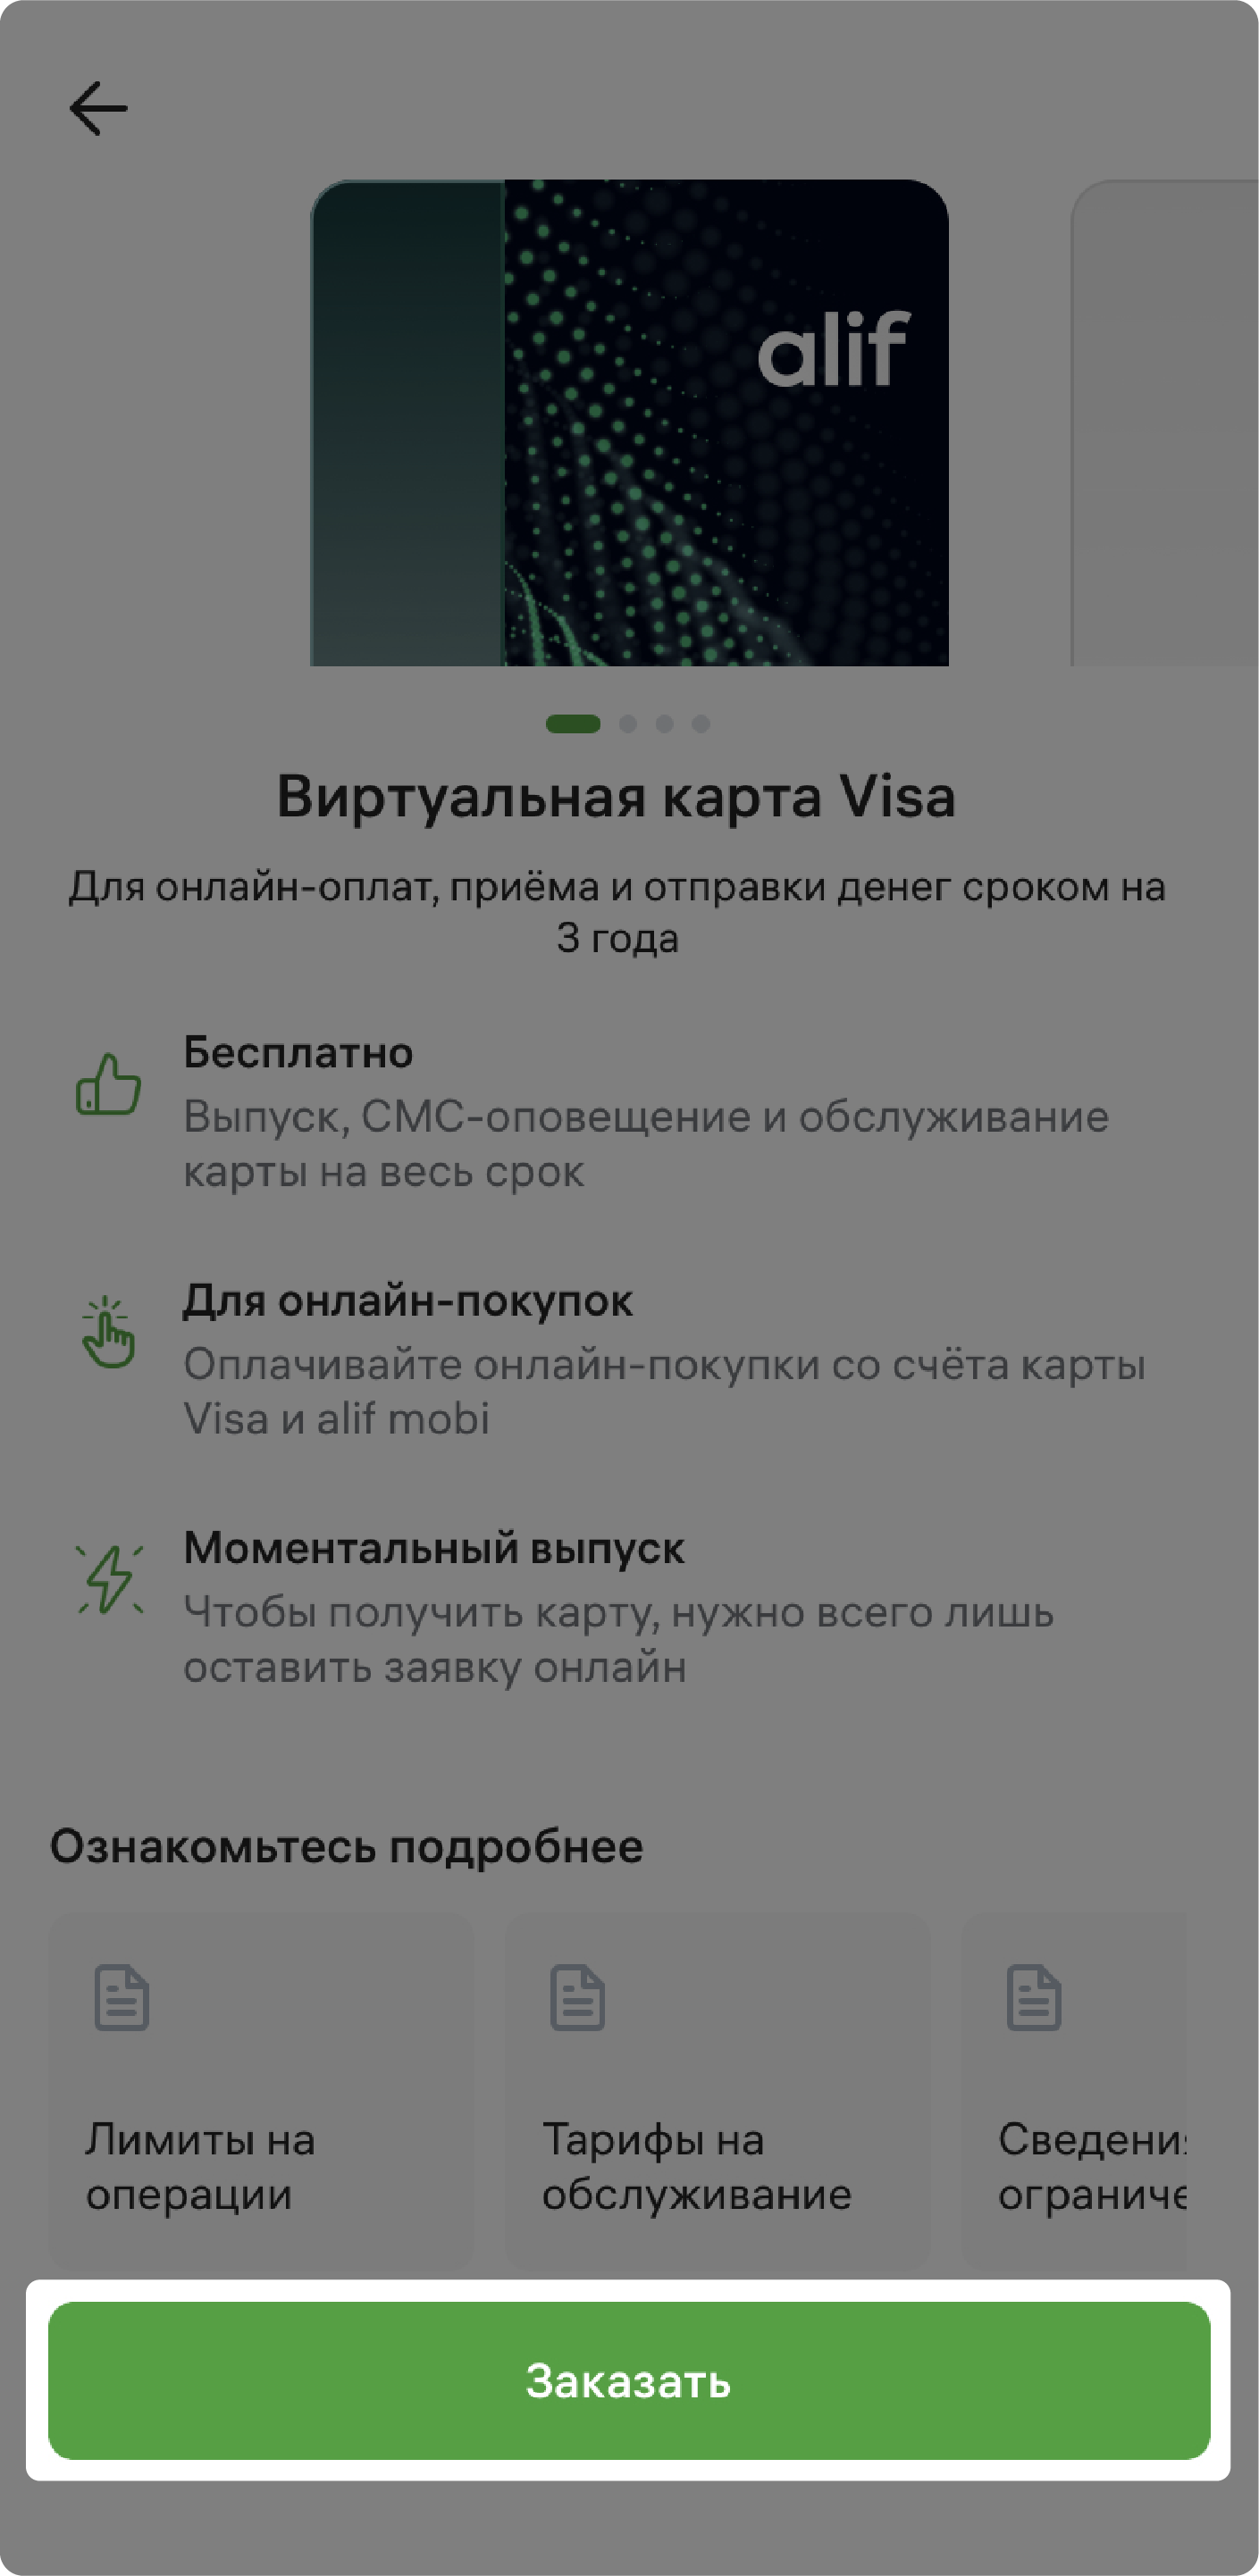 Как заказать виртуальную карту Visa Digital?